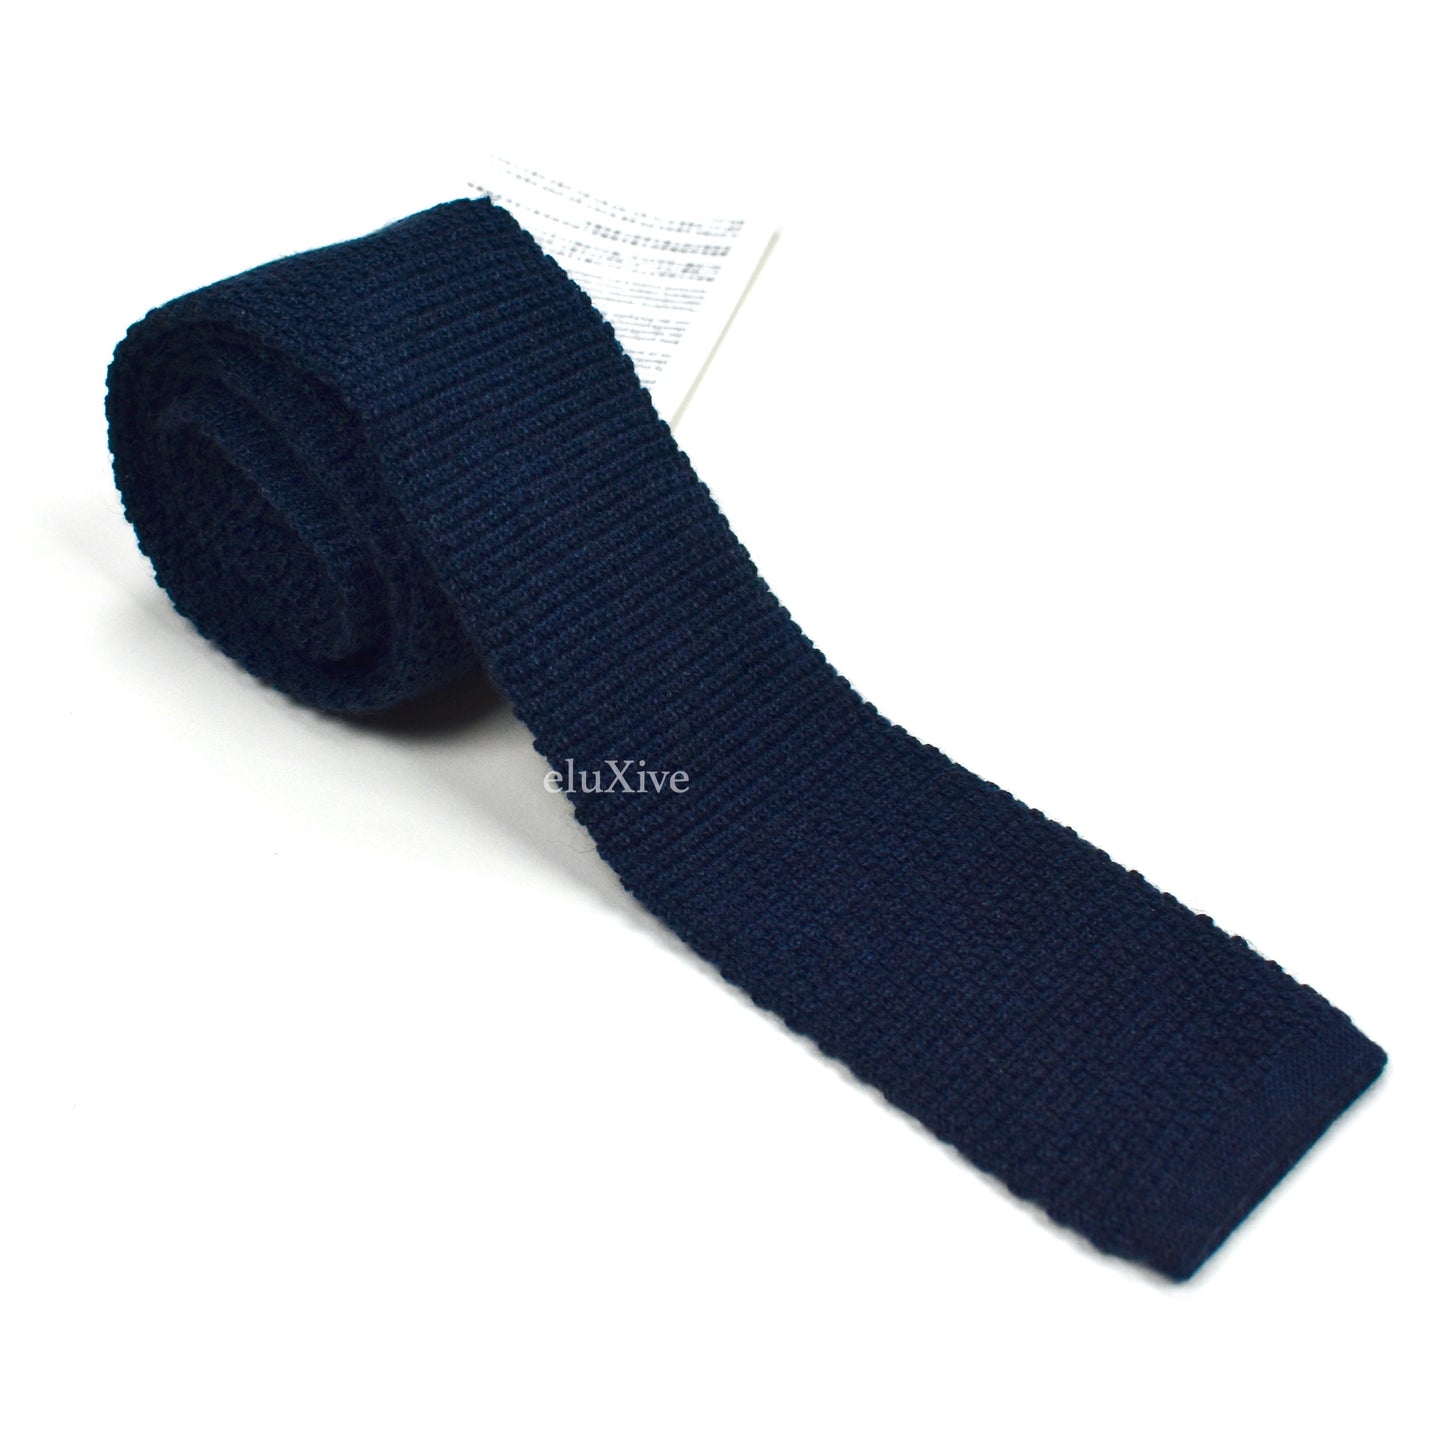 Brioni - Navy Cashmere / Silk Knit Tie